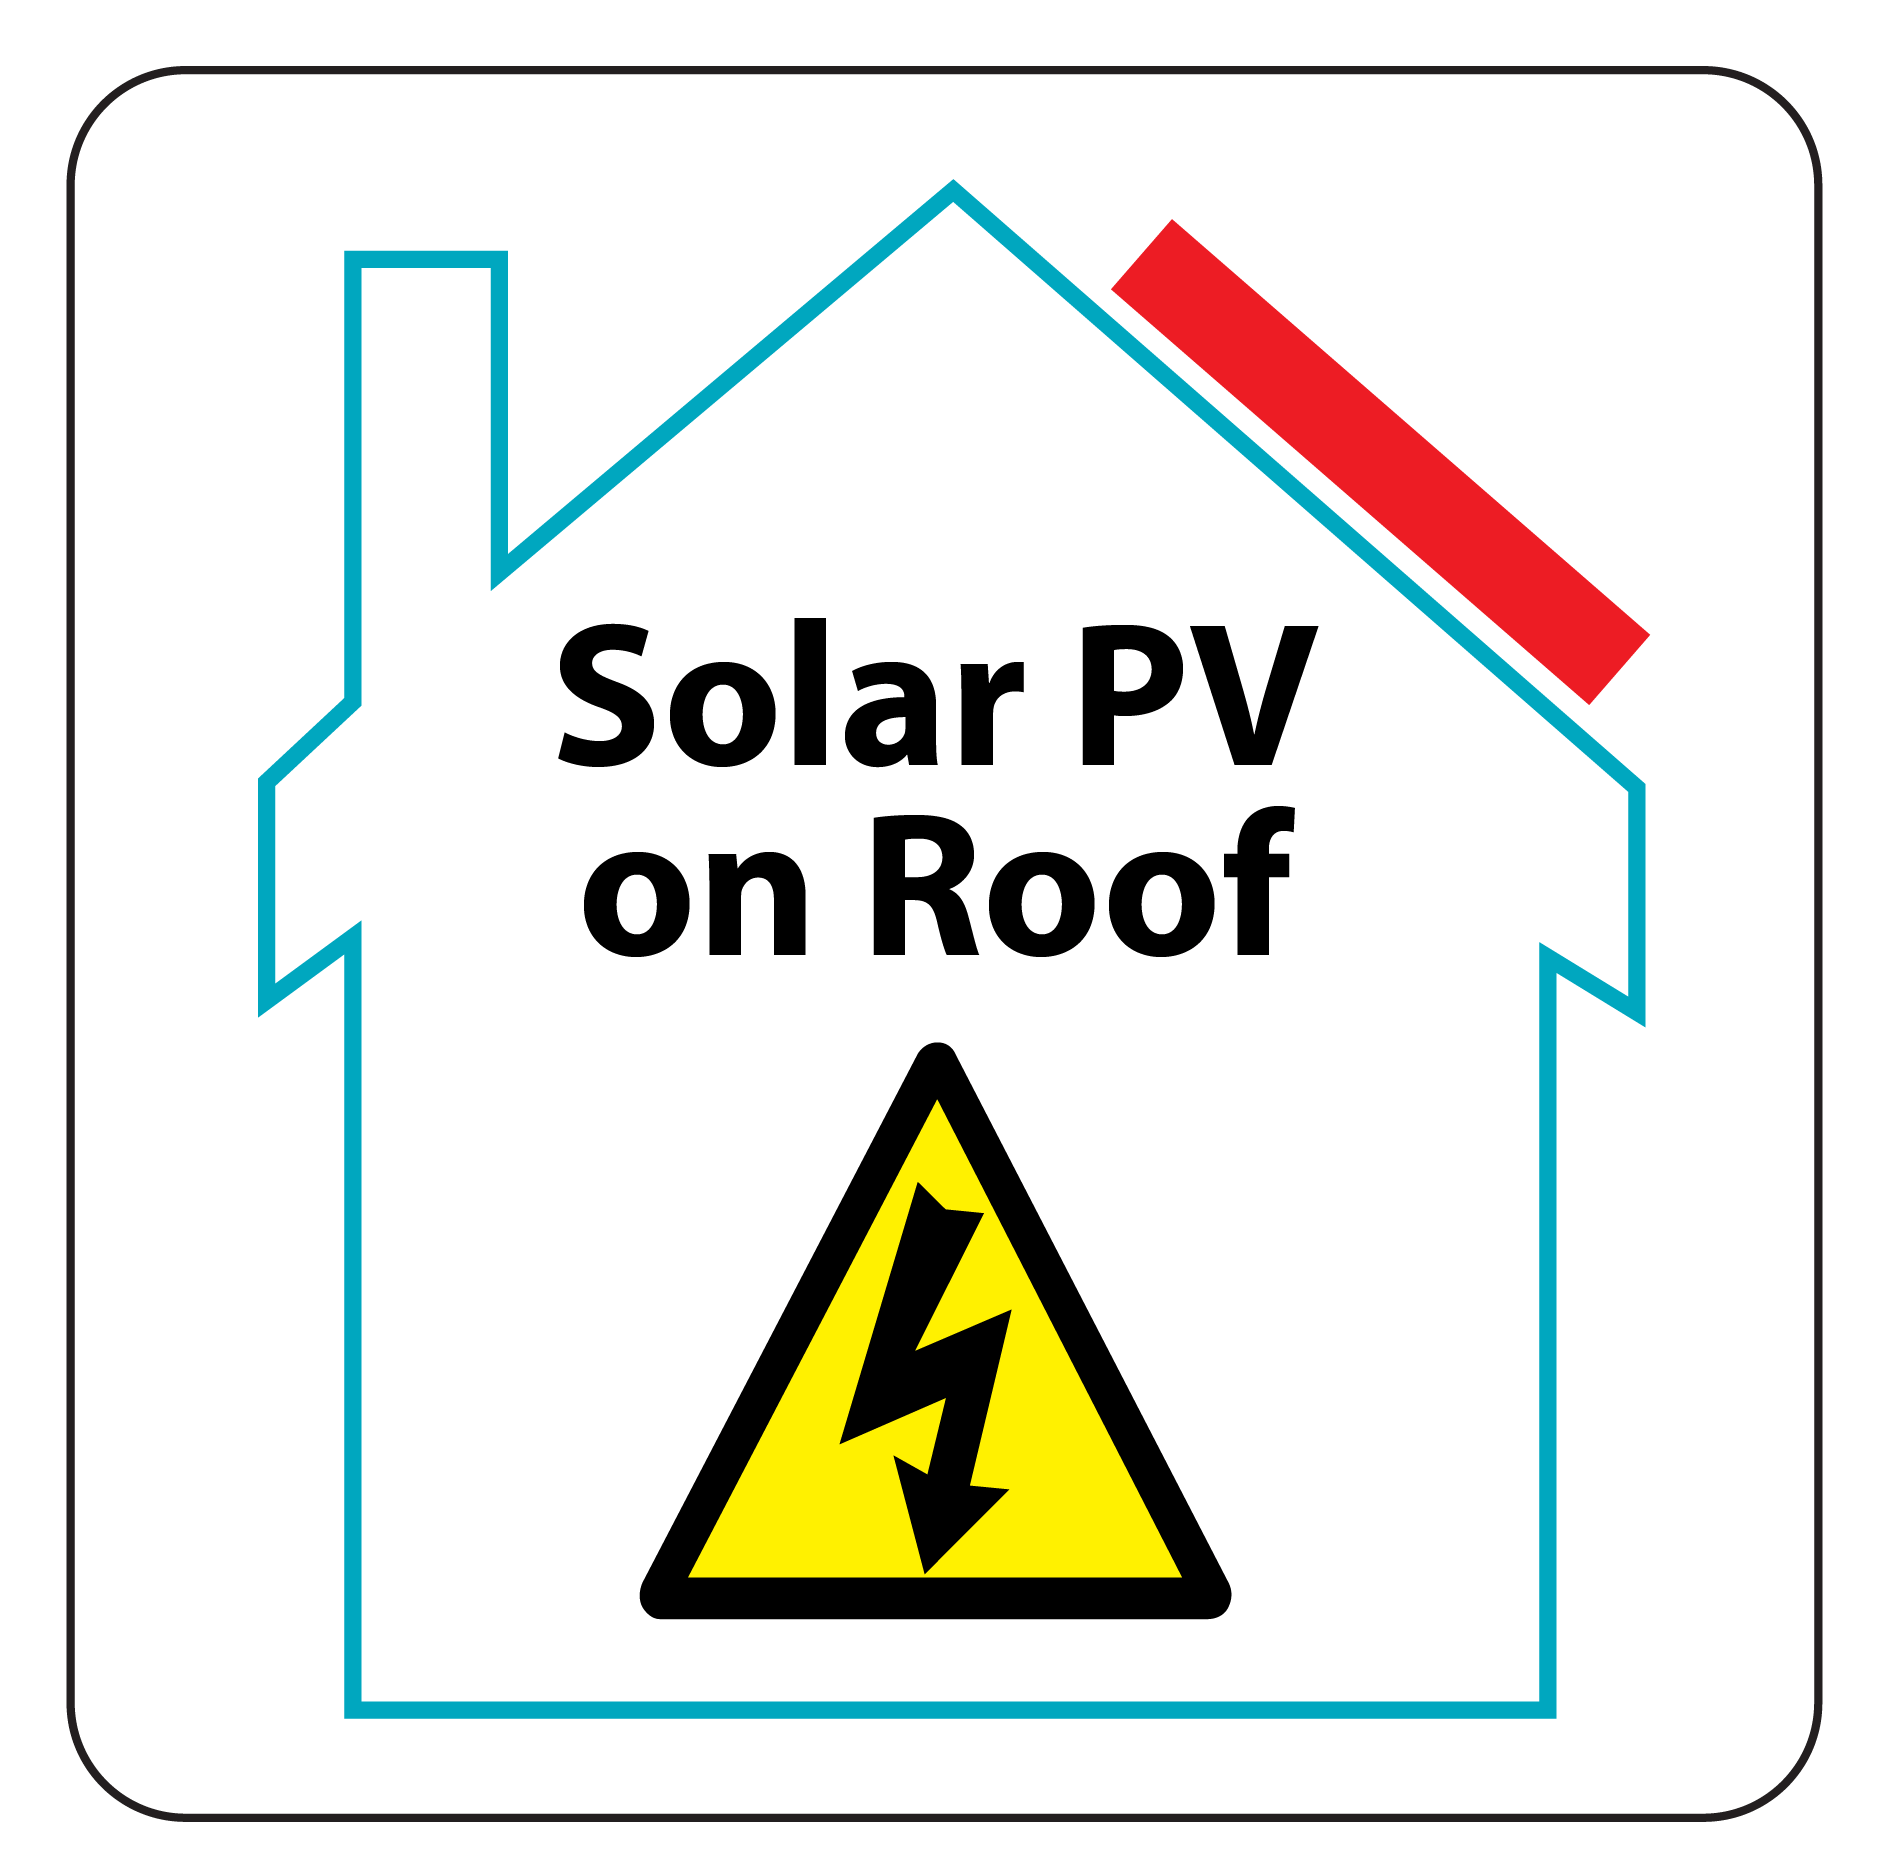 PV on roof Hazard warning Label sheet